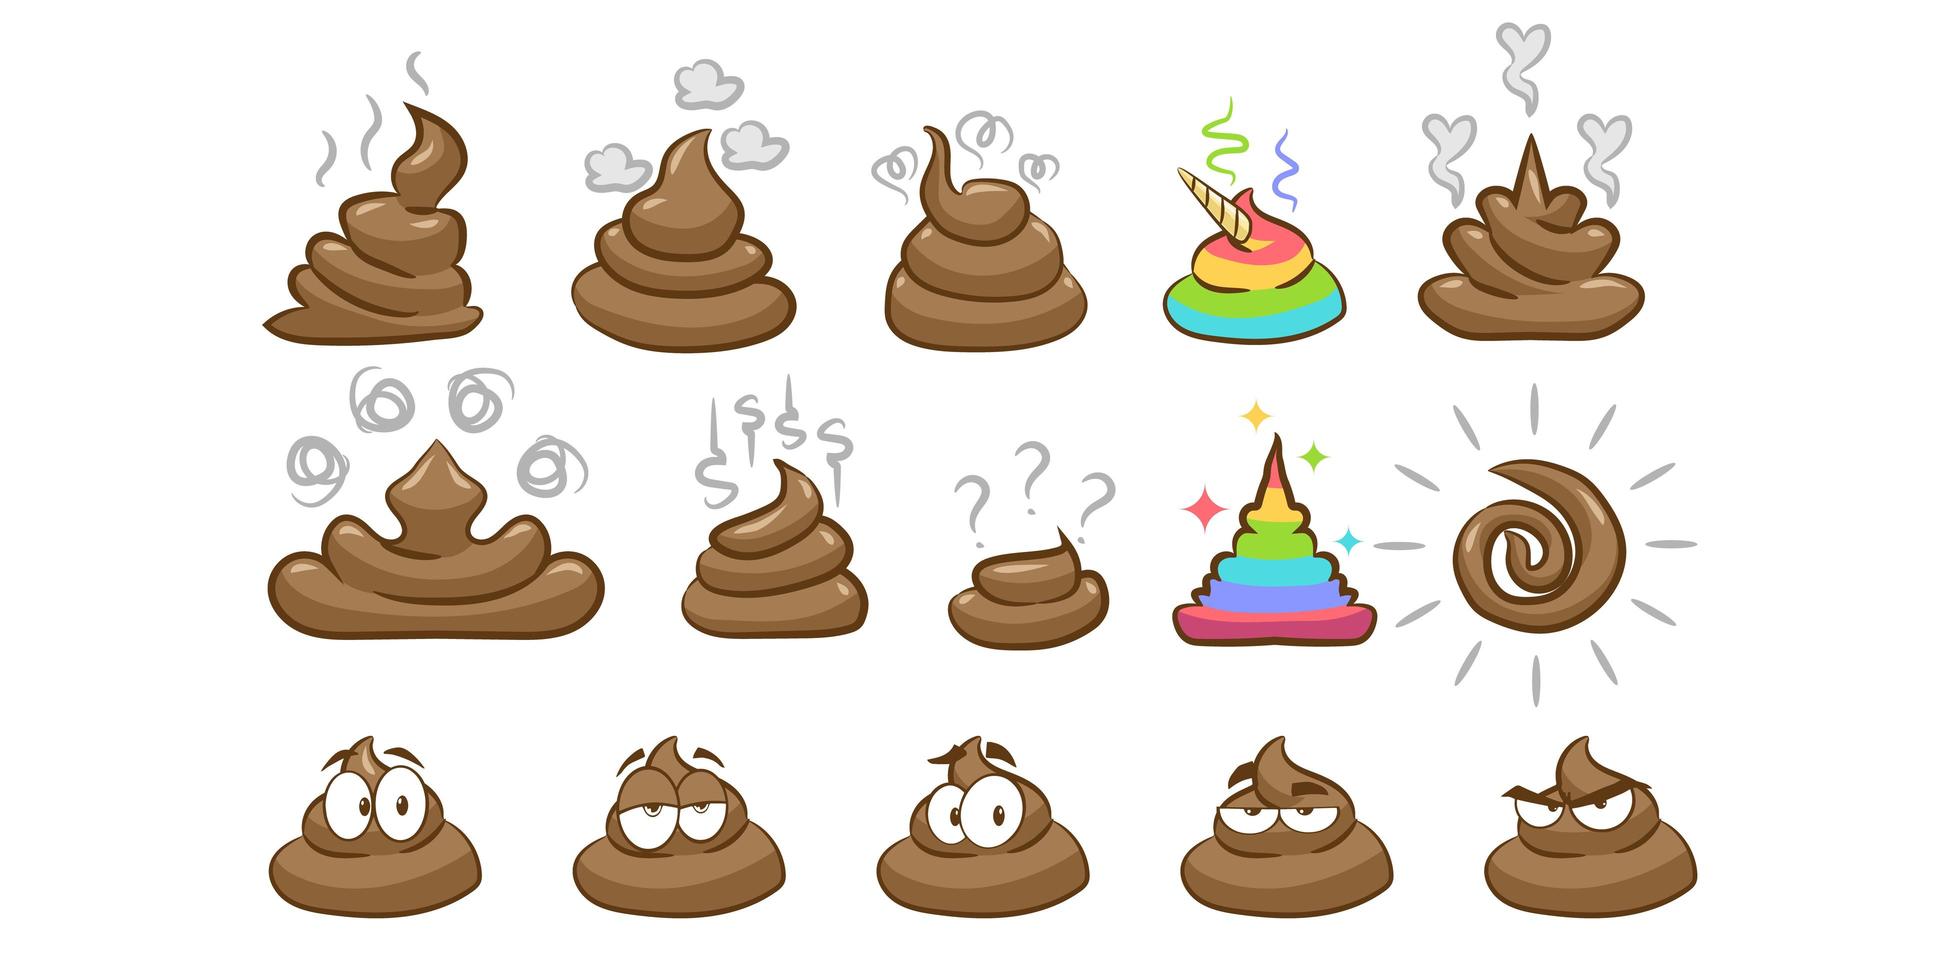 Bildillustration von Poo Emoji in verschiedenen Formen